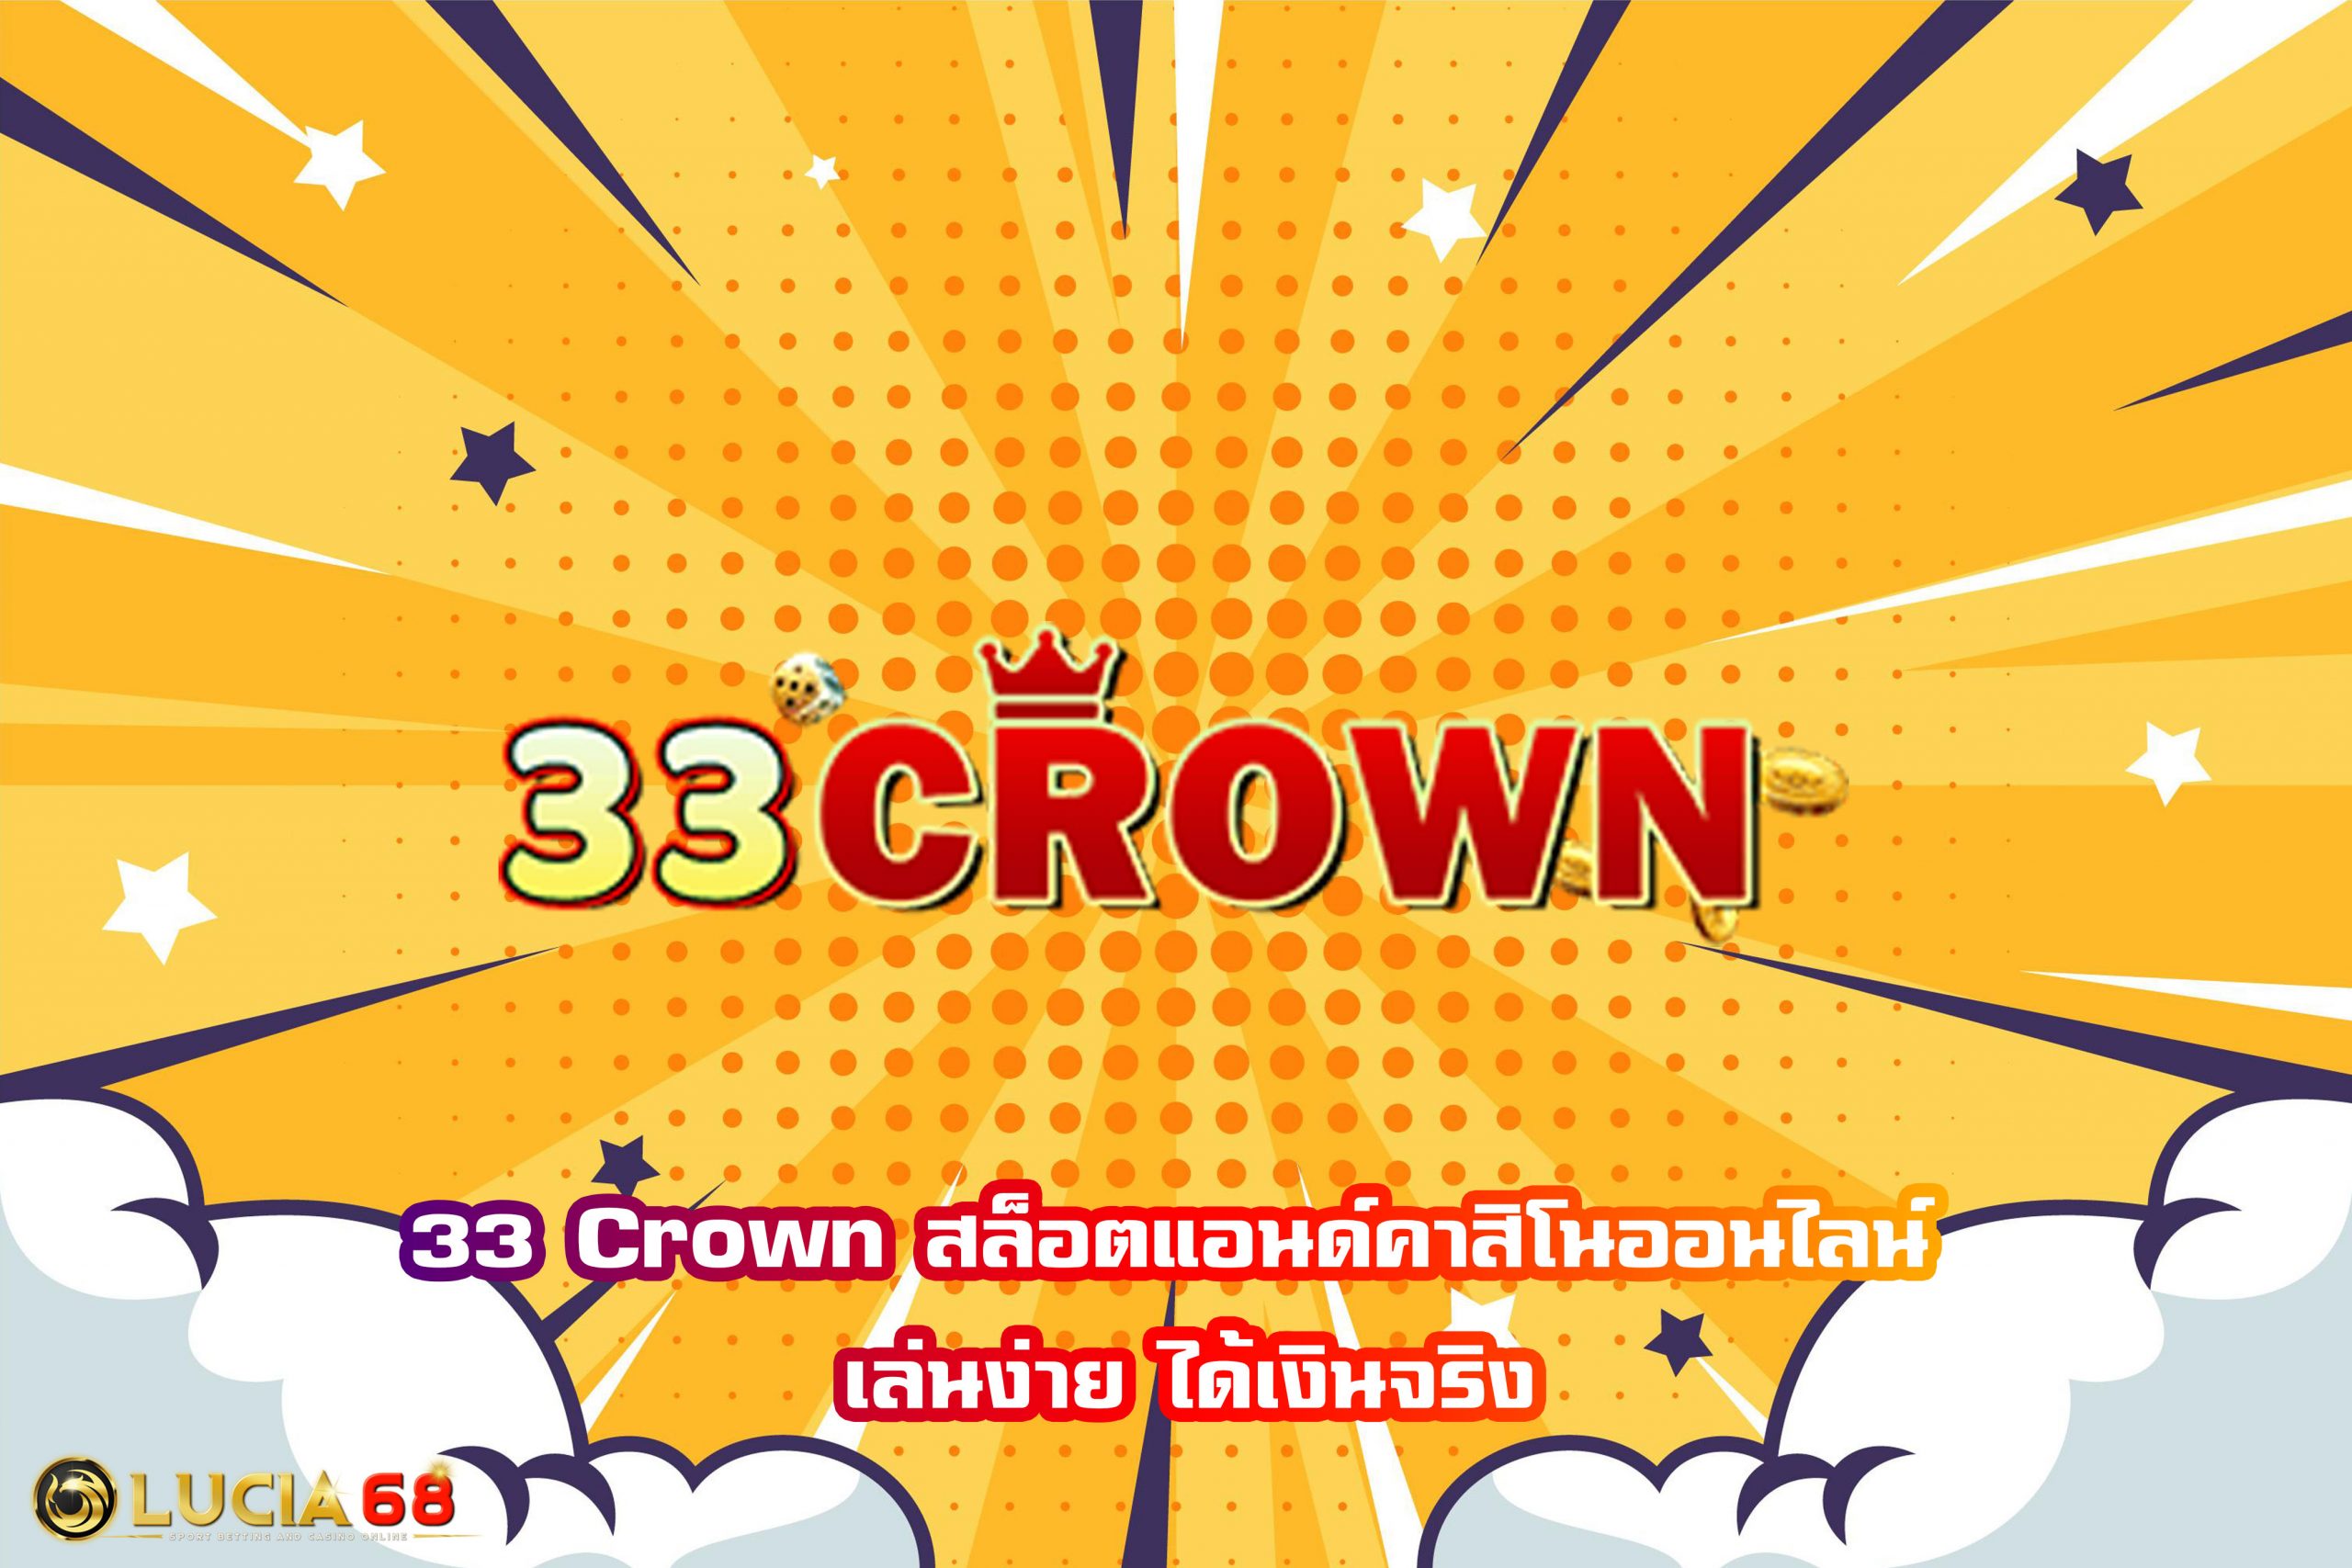 33 Crown สล็อตแอนด์คาสิโนออนไลน์ เล่นง่าย ได้เงินจริง